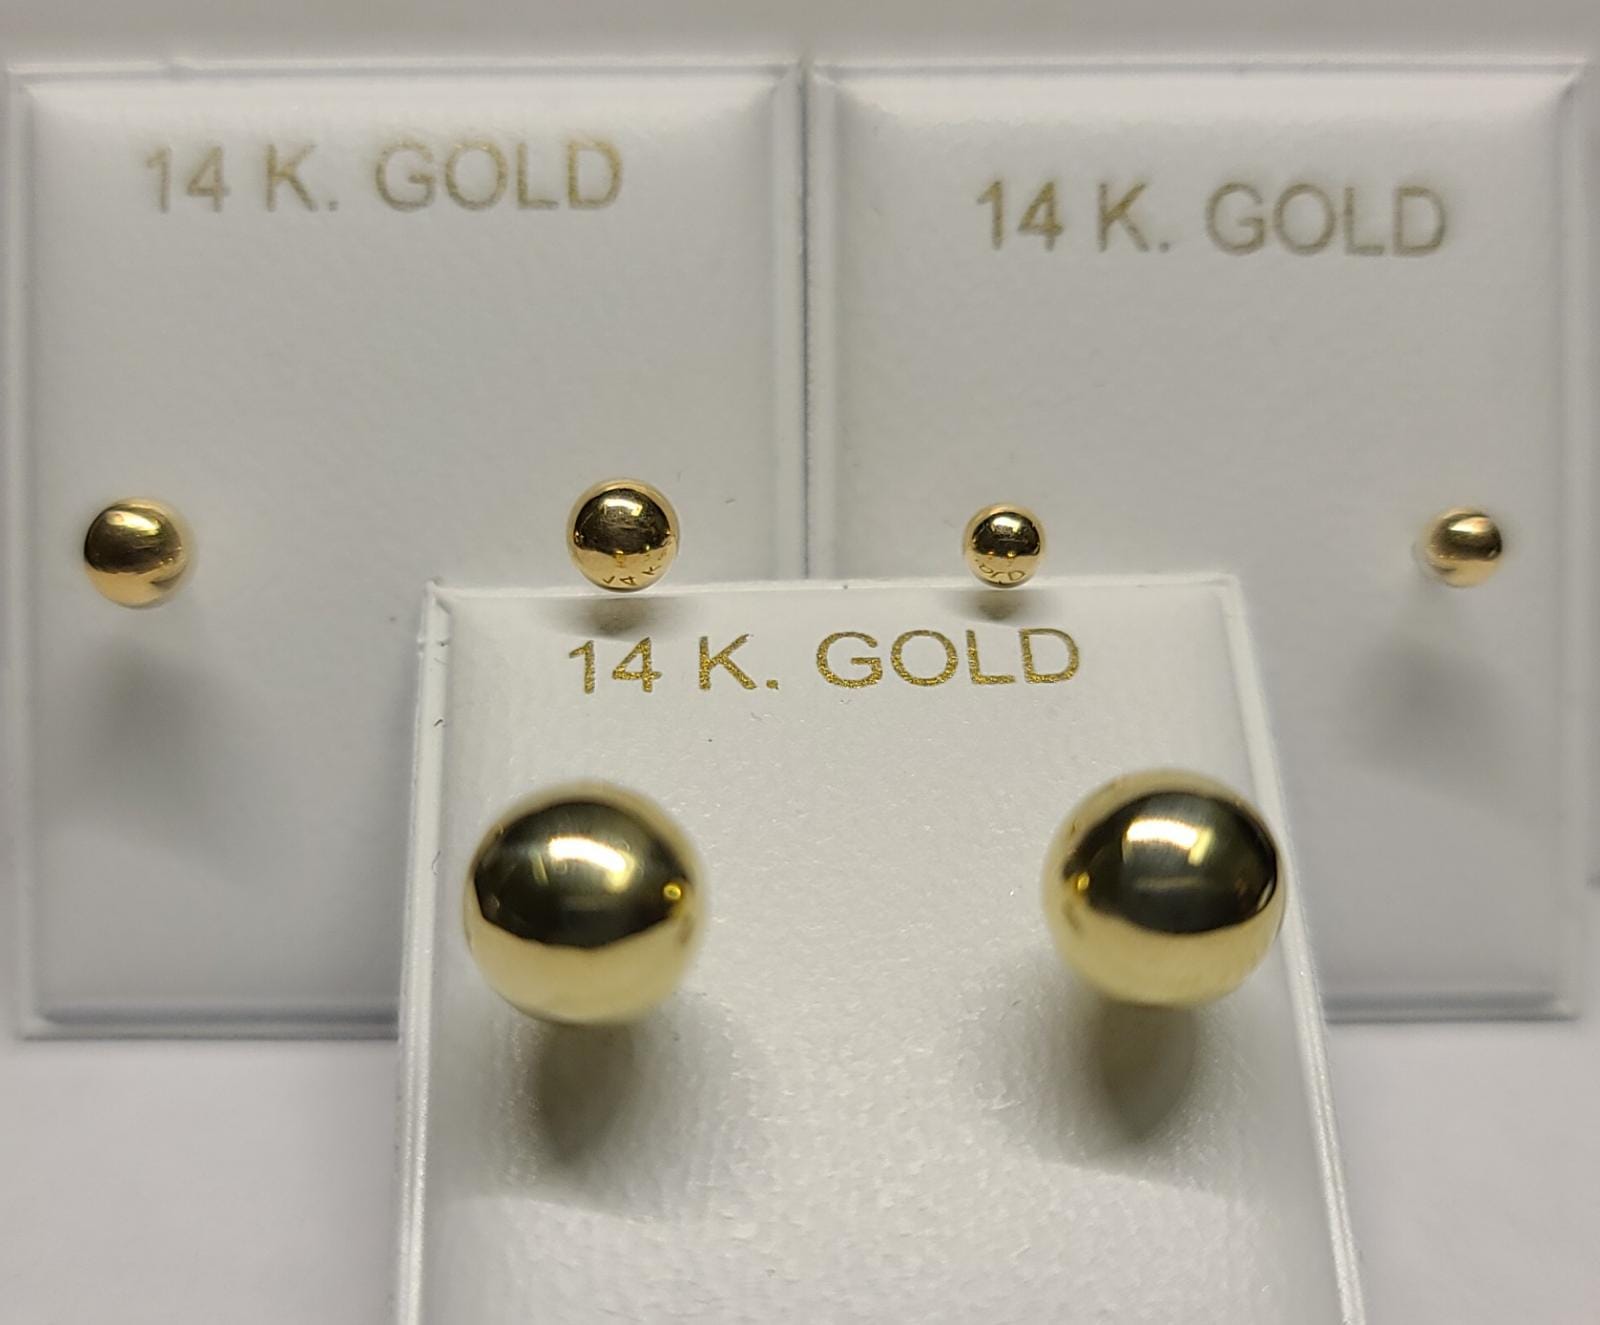 14K Gold Children's Ball Earrings